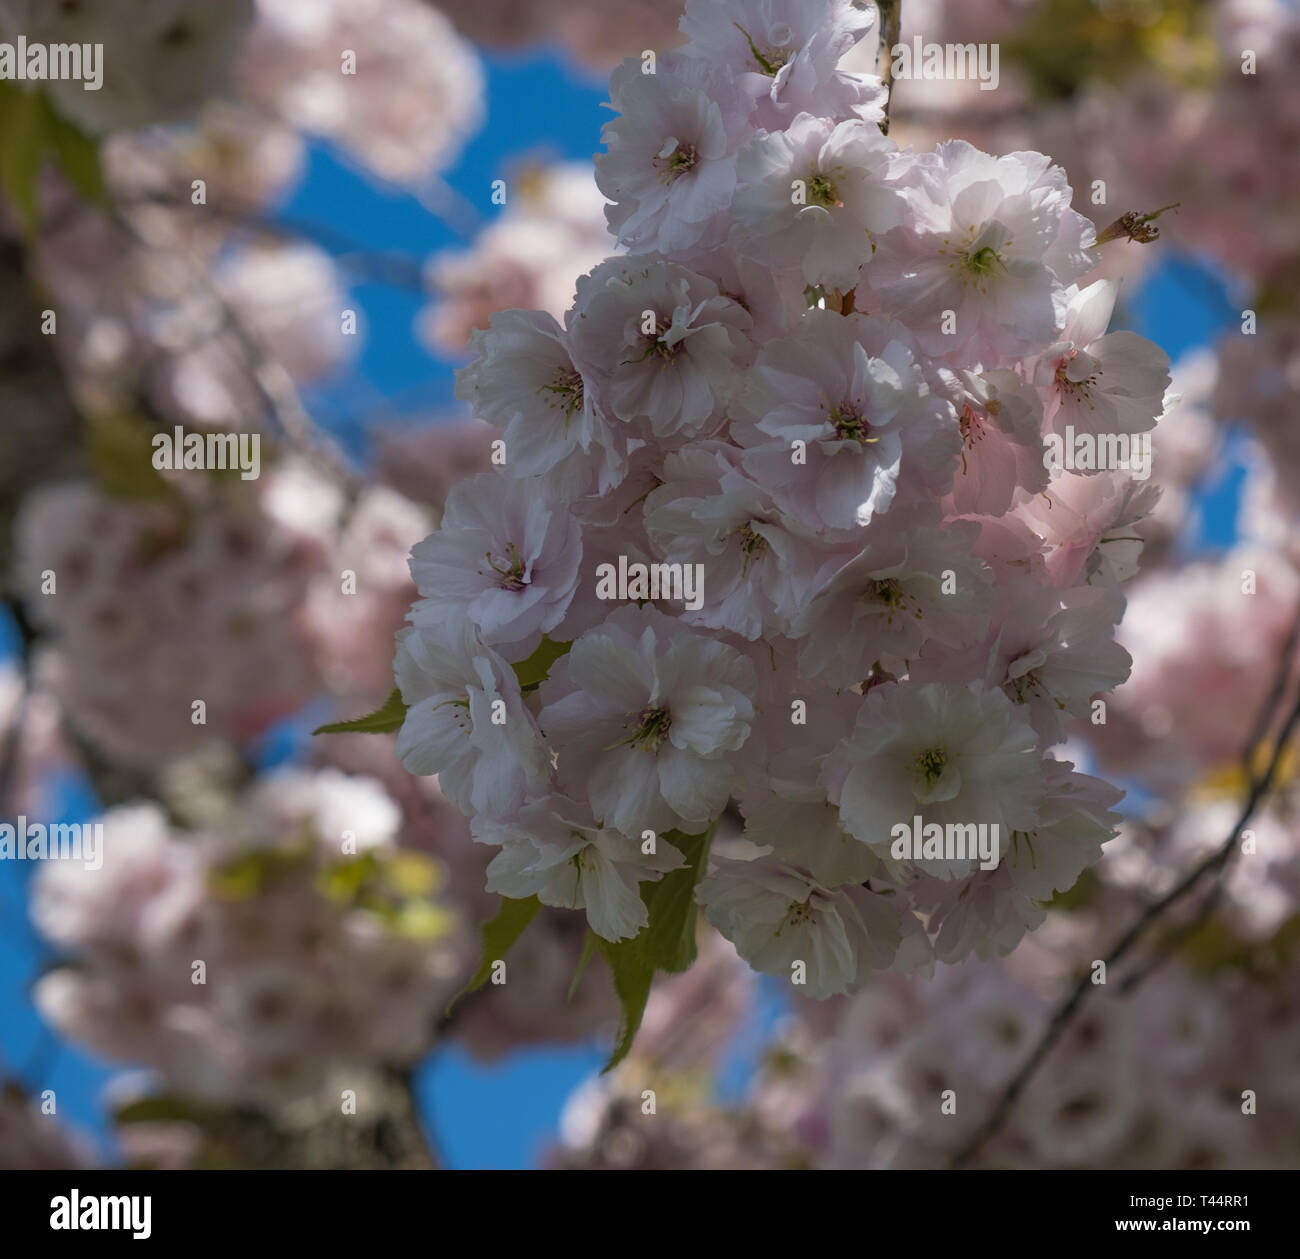 Soft rosa fiori di ciliegio appeso a un albero contro un luminoso cielo blu. Soft focus la bordatura. Foto Stock